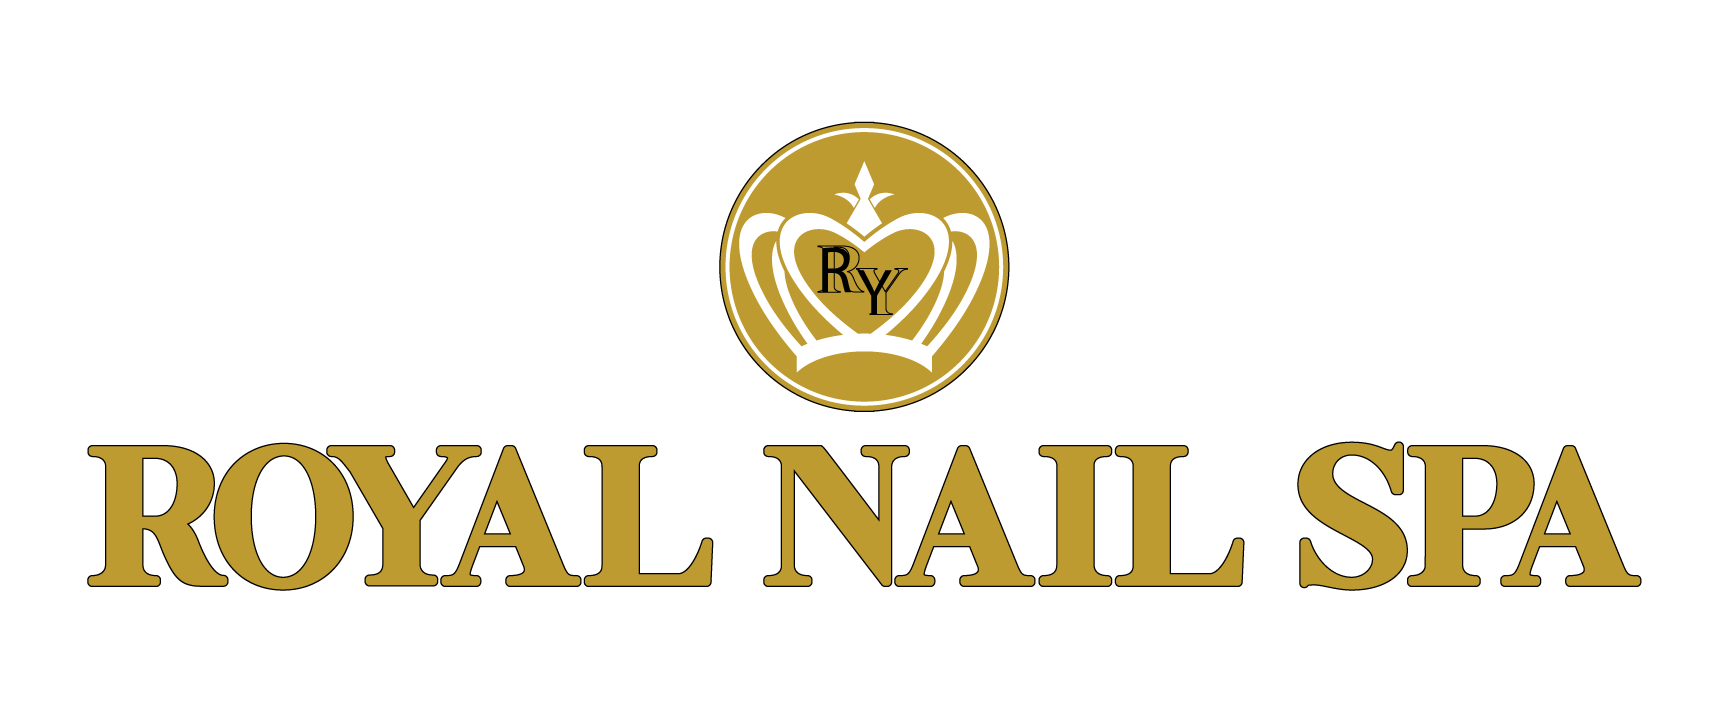 Nails salon poster with discounts | Nail salon, Nail salon and spa, Nail  art salon